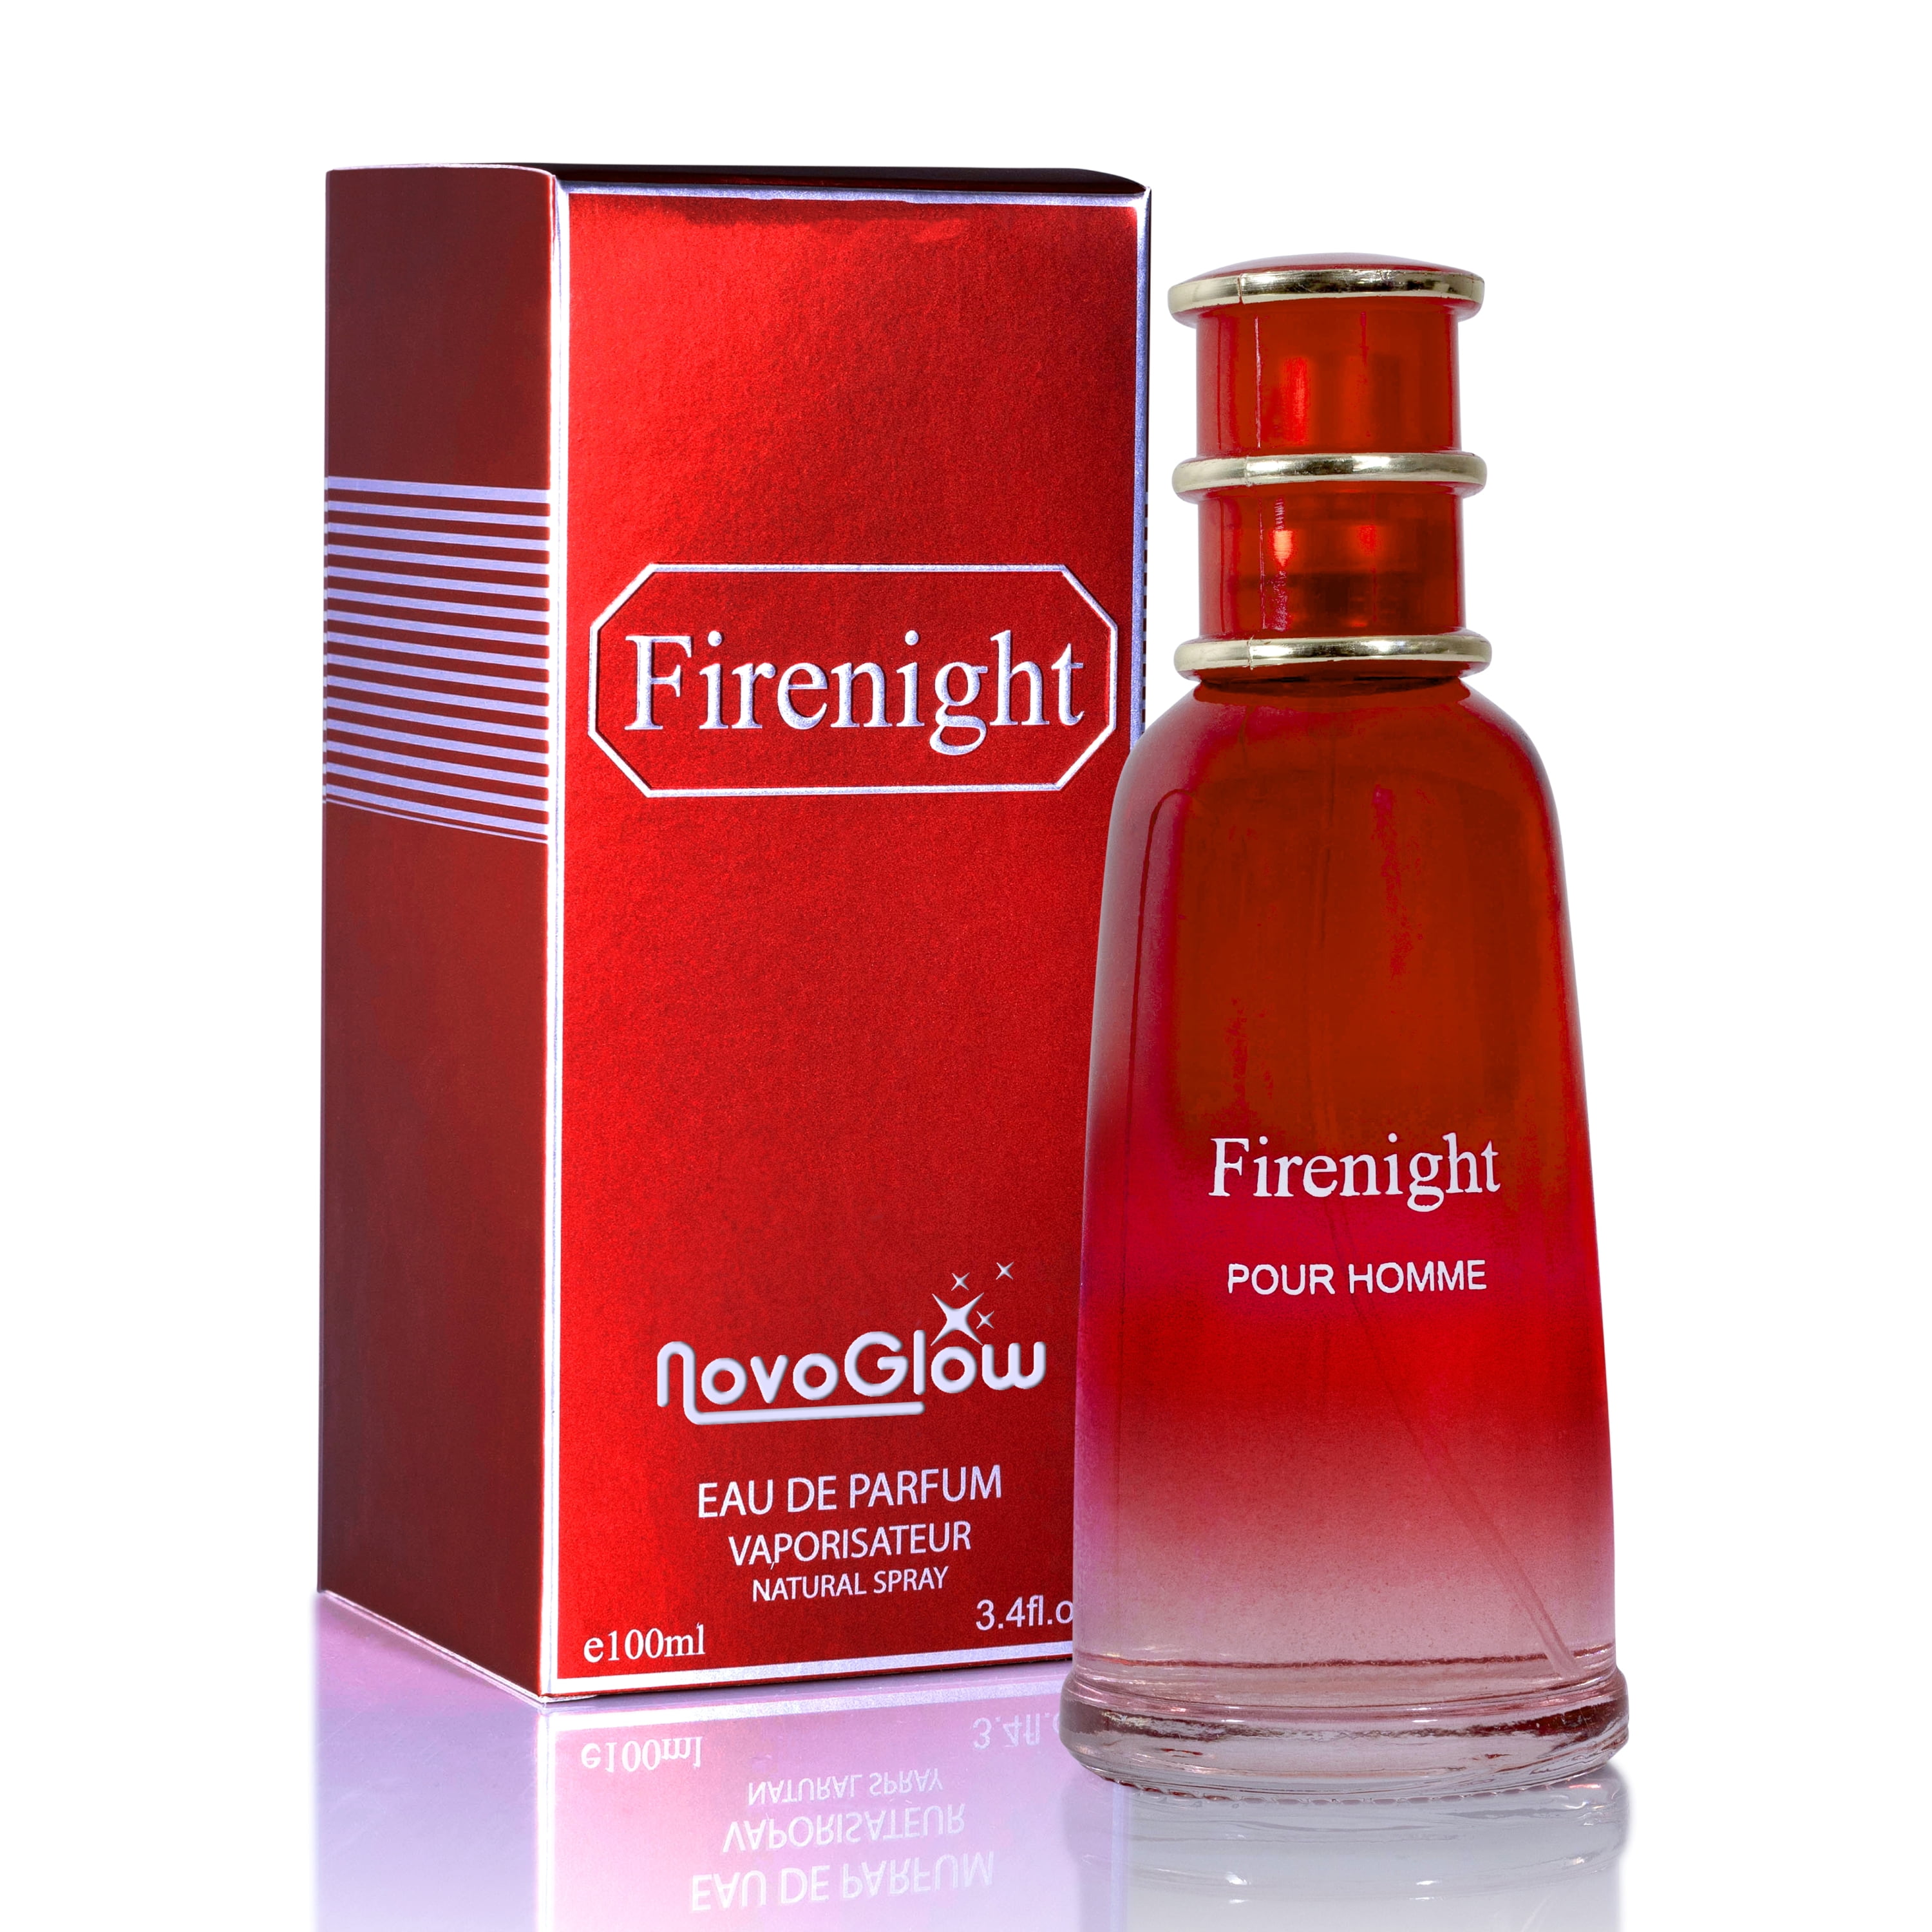 NovoGlow Firenight Pour Homme, Eau De Parfum 3.4 fl oz. Cologne for Men  Men's Fragrance with NovoGlow Carrying Pouch 